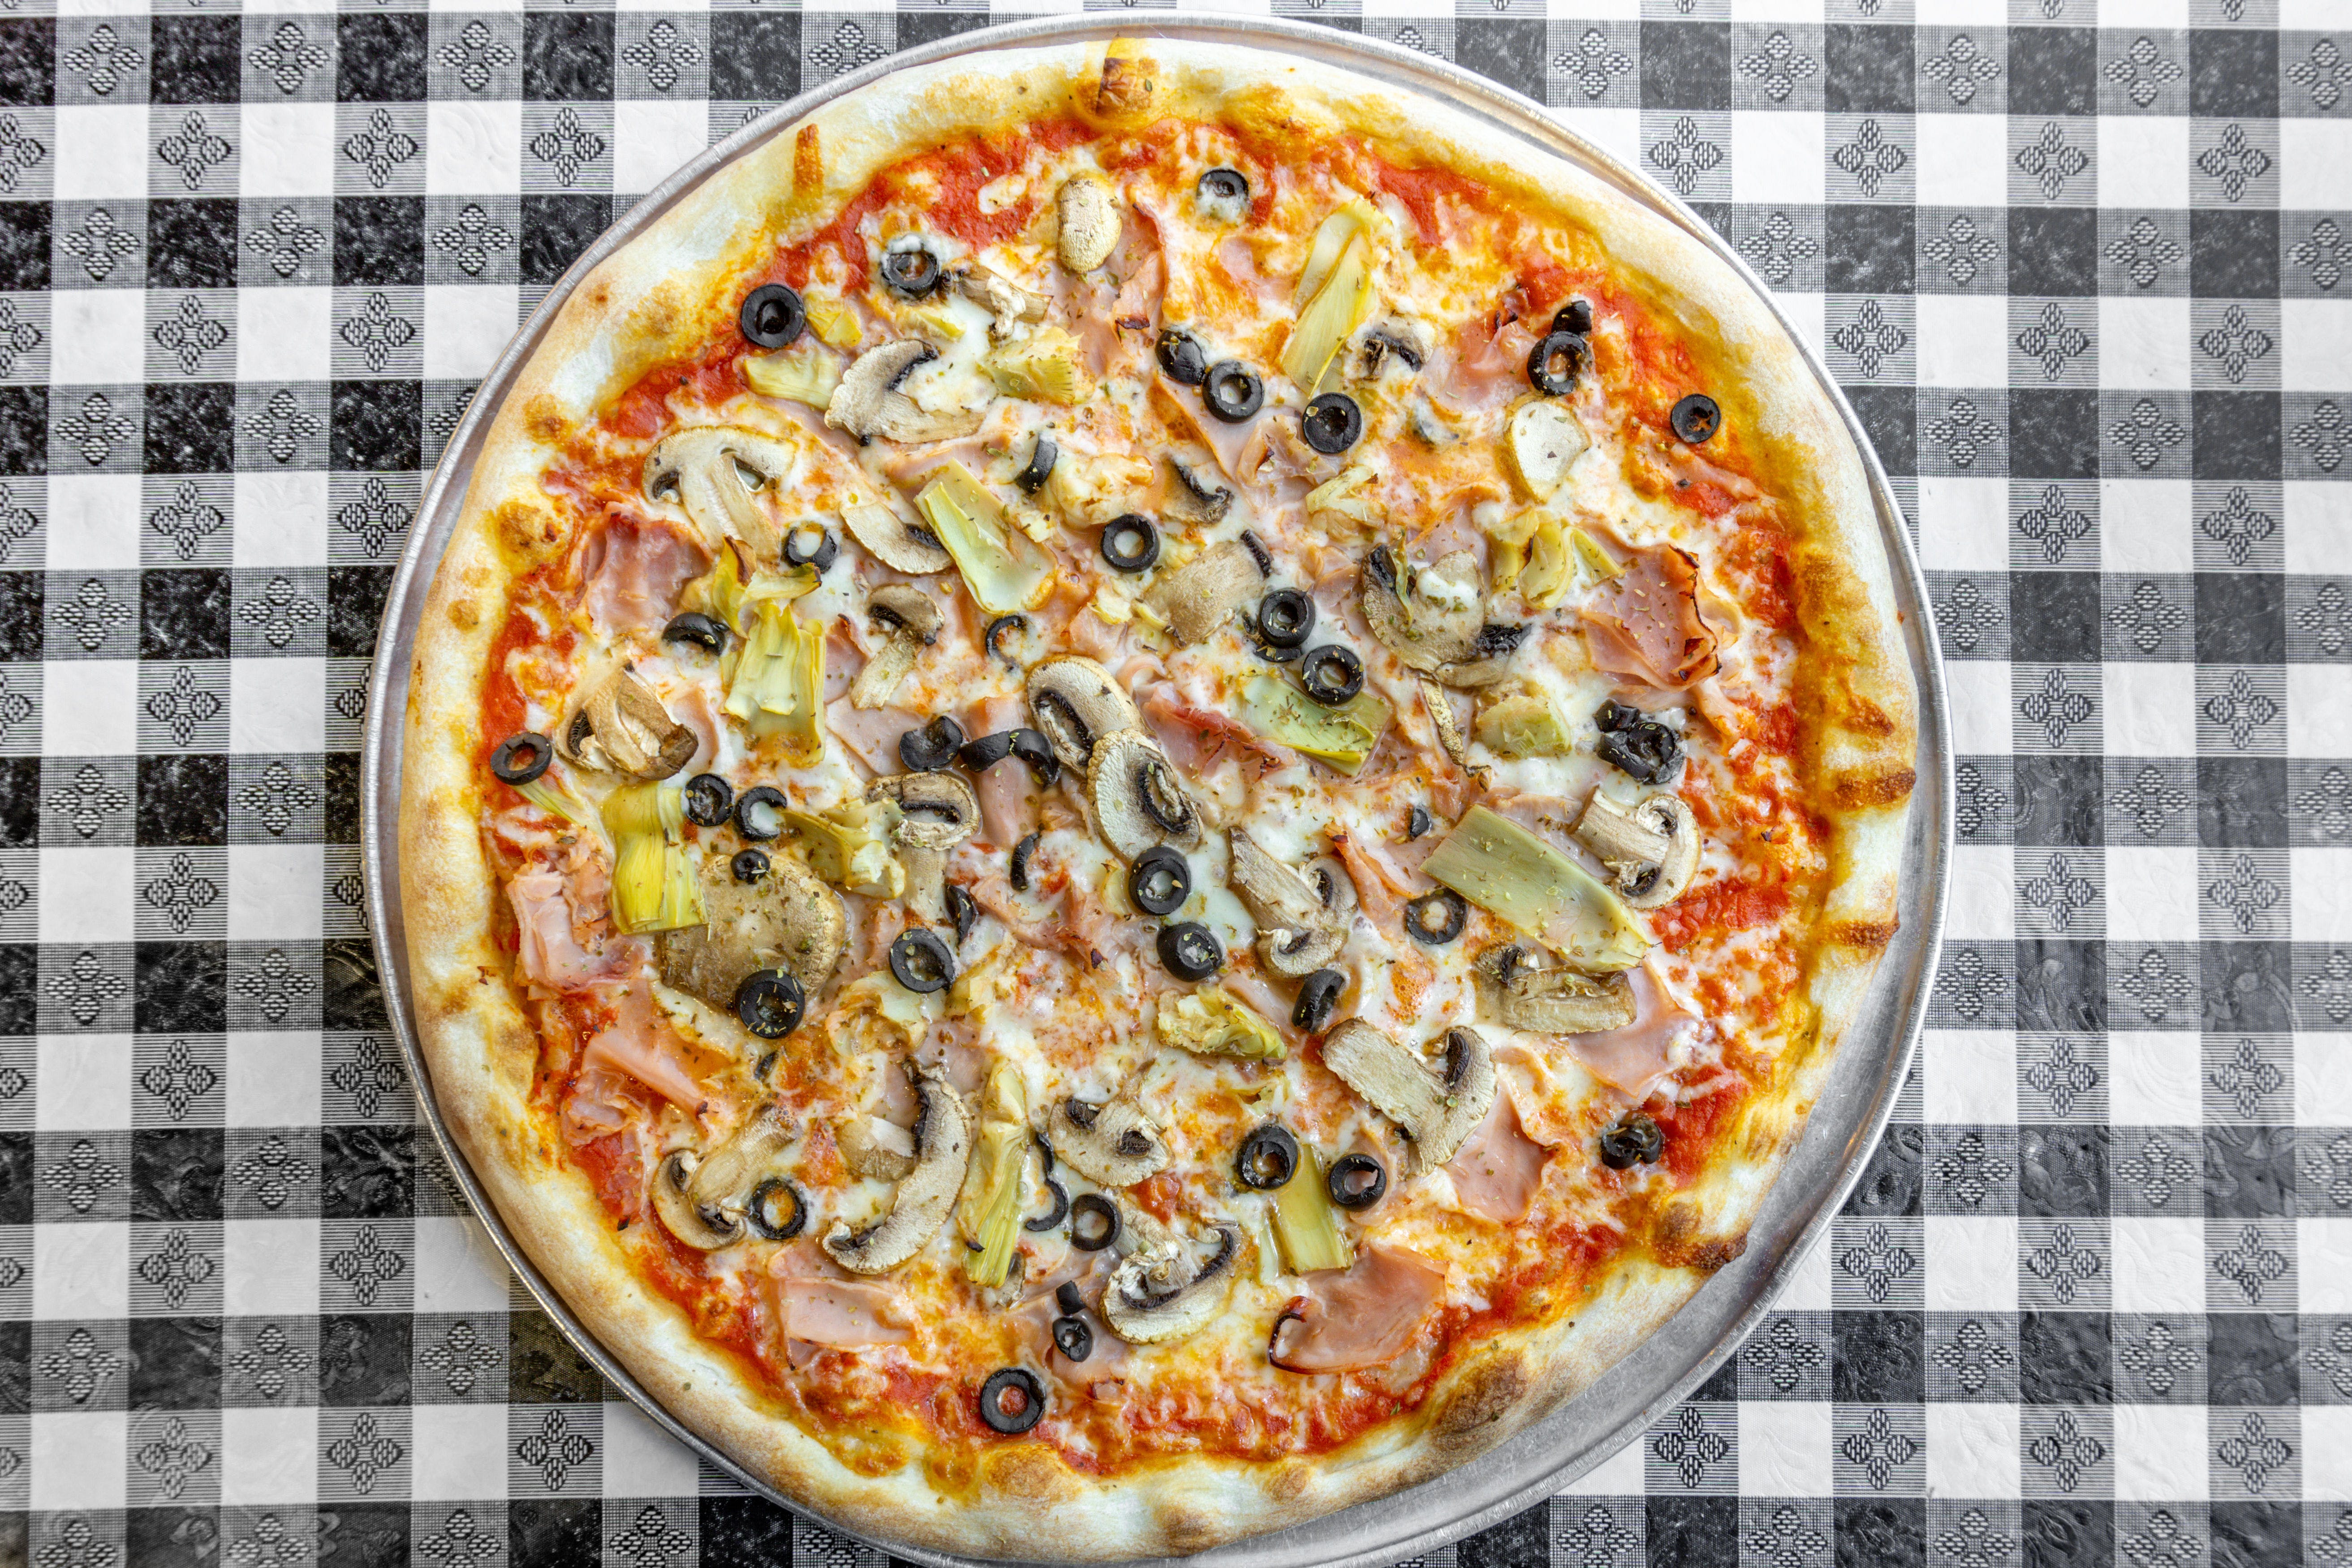 Bongiorno's Pizza & Italian Deli hero